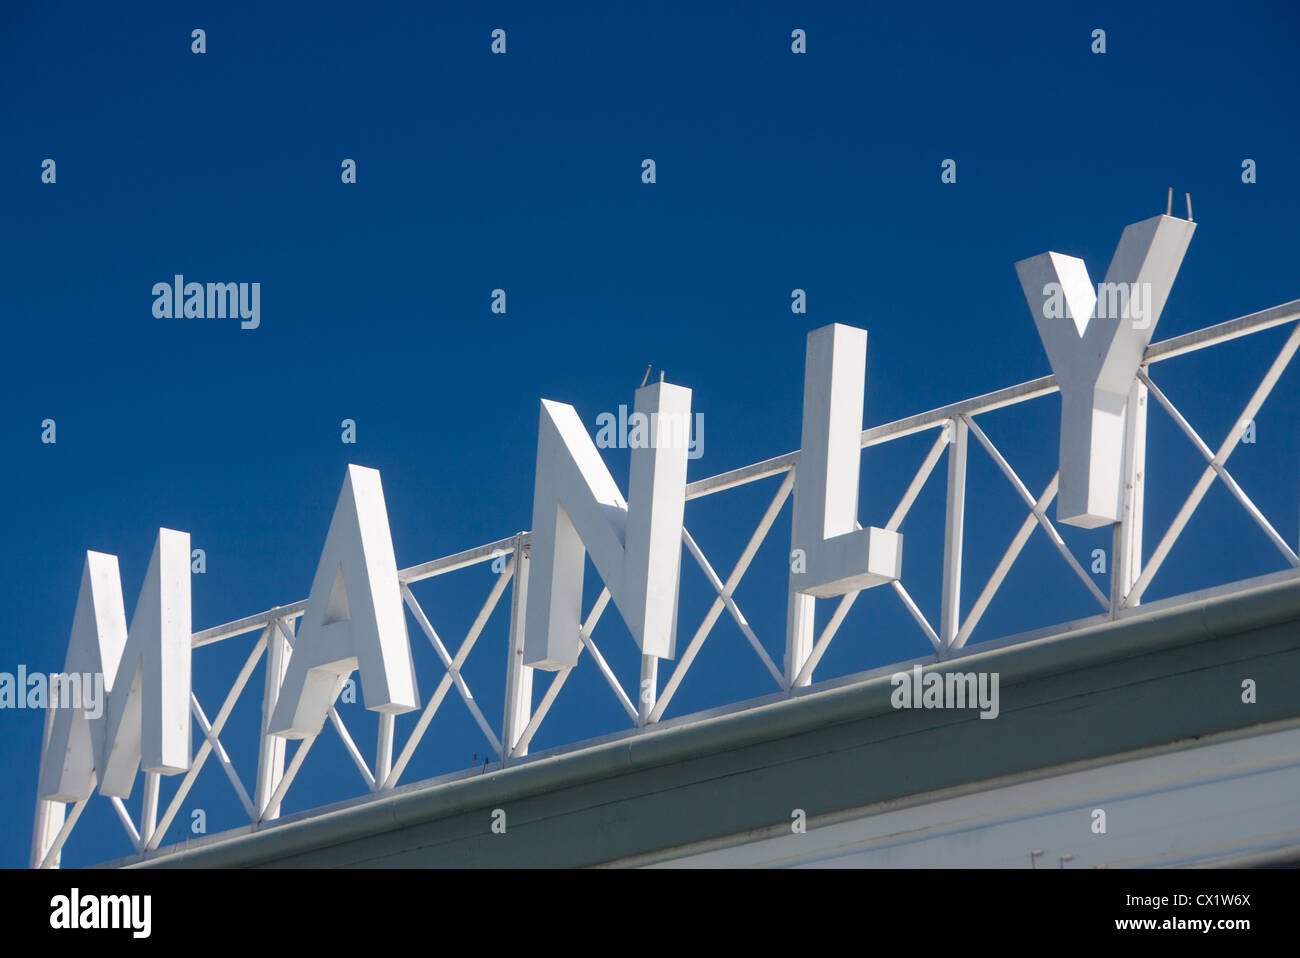 Manly Wharf Art Deco Schild weiß auf blauem Himmelshintergrund Manly Sydney New South Wales (NSW) Australien Stockfoto